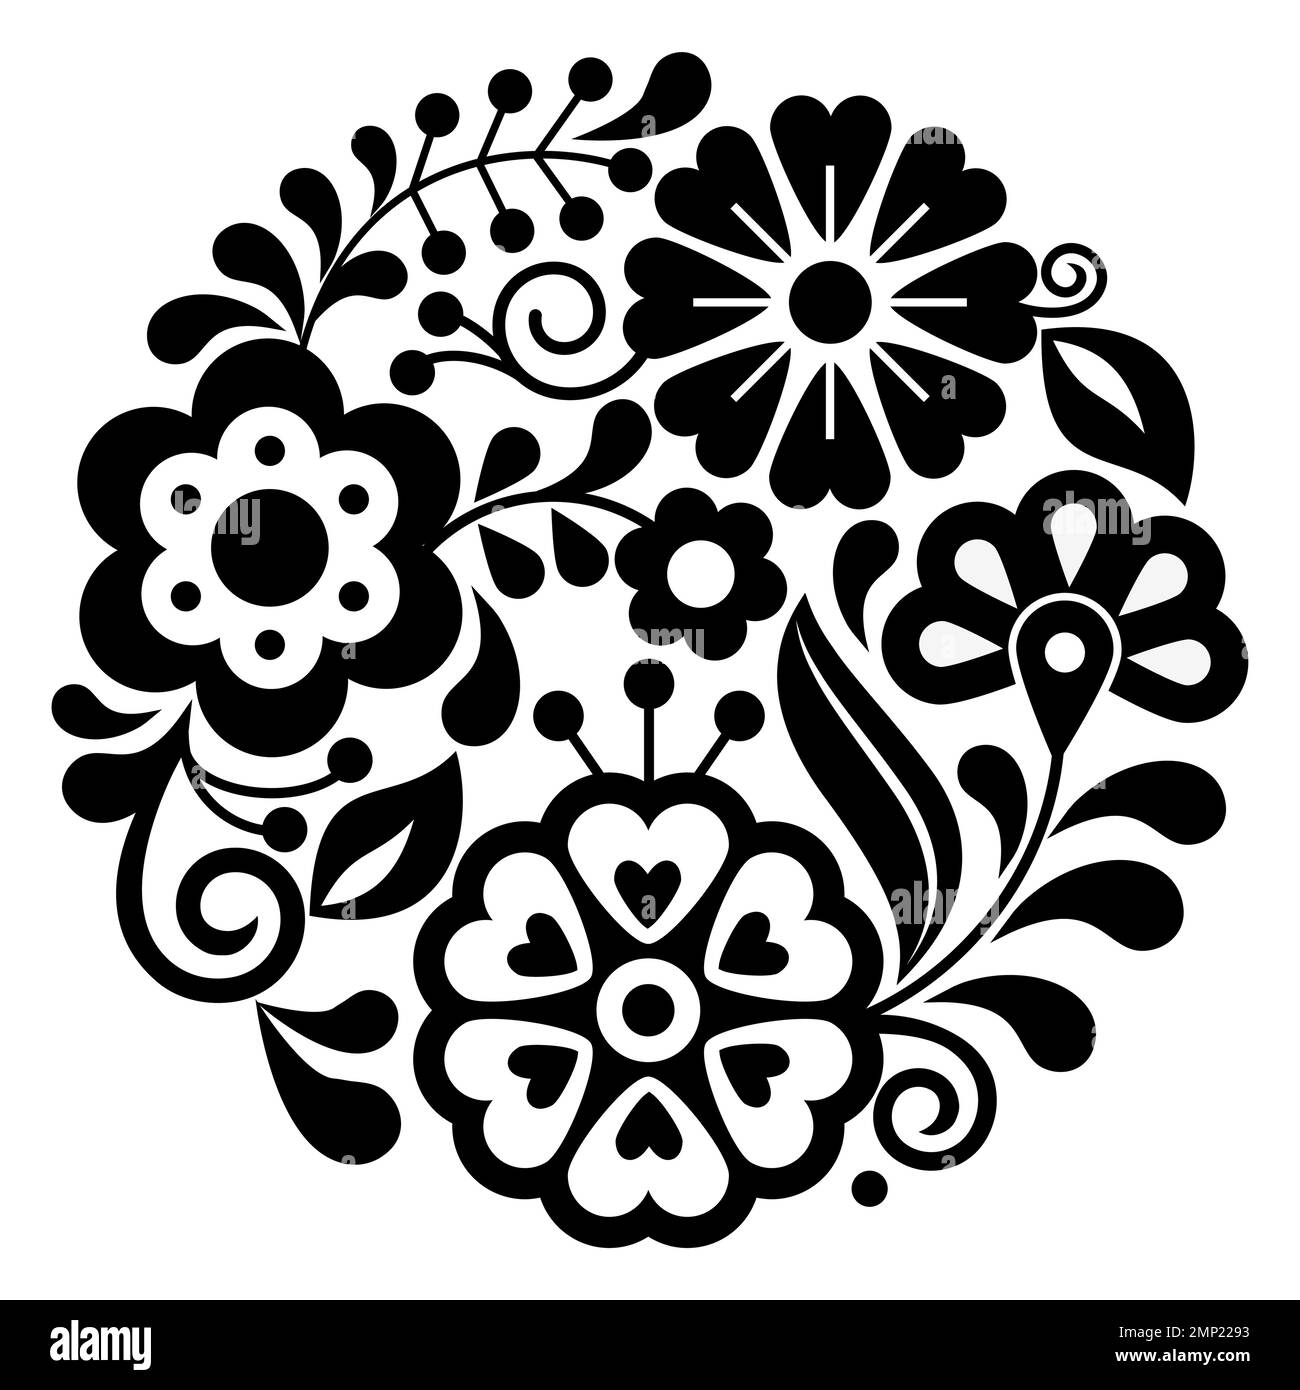 Le style art populaire mexicain vector rond motif floral dans le cadre, la nature noir et blanc mandala composition inspirée par les dessins traditionnels de broderie fro Illustration de Vecteur